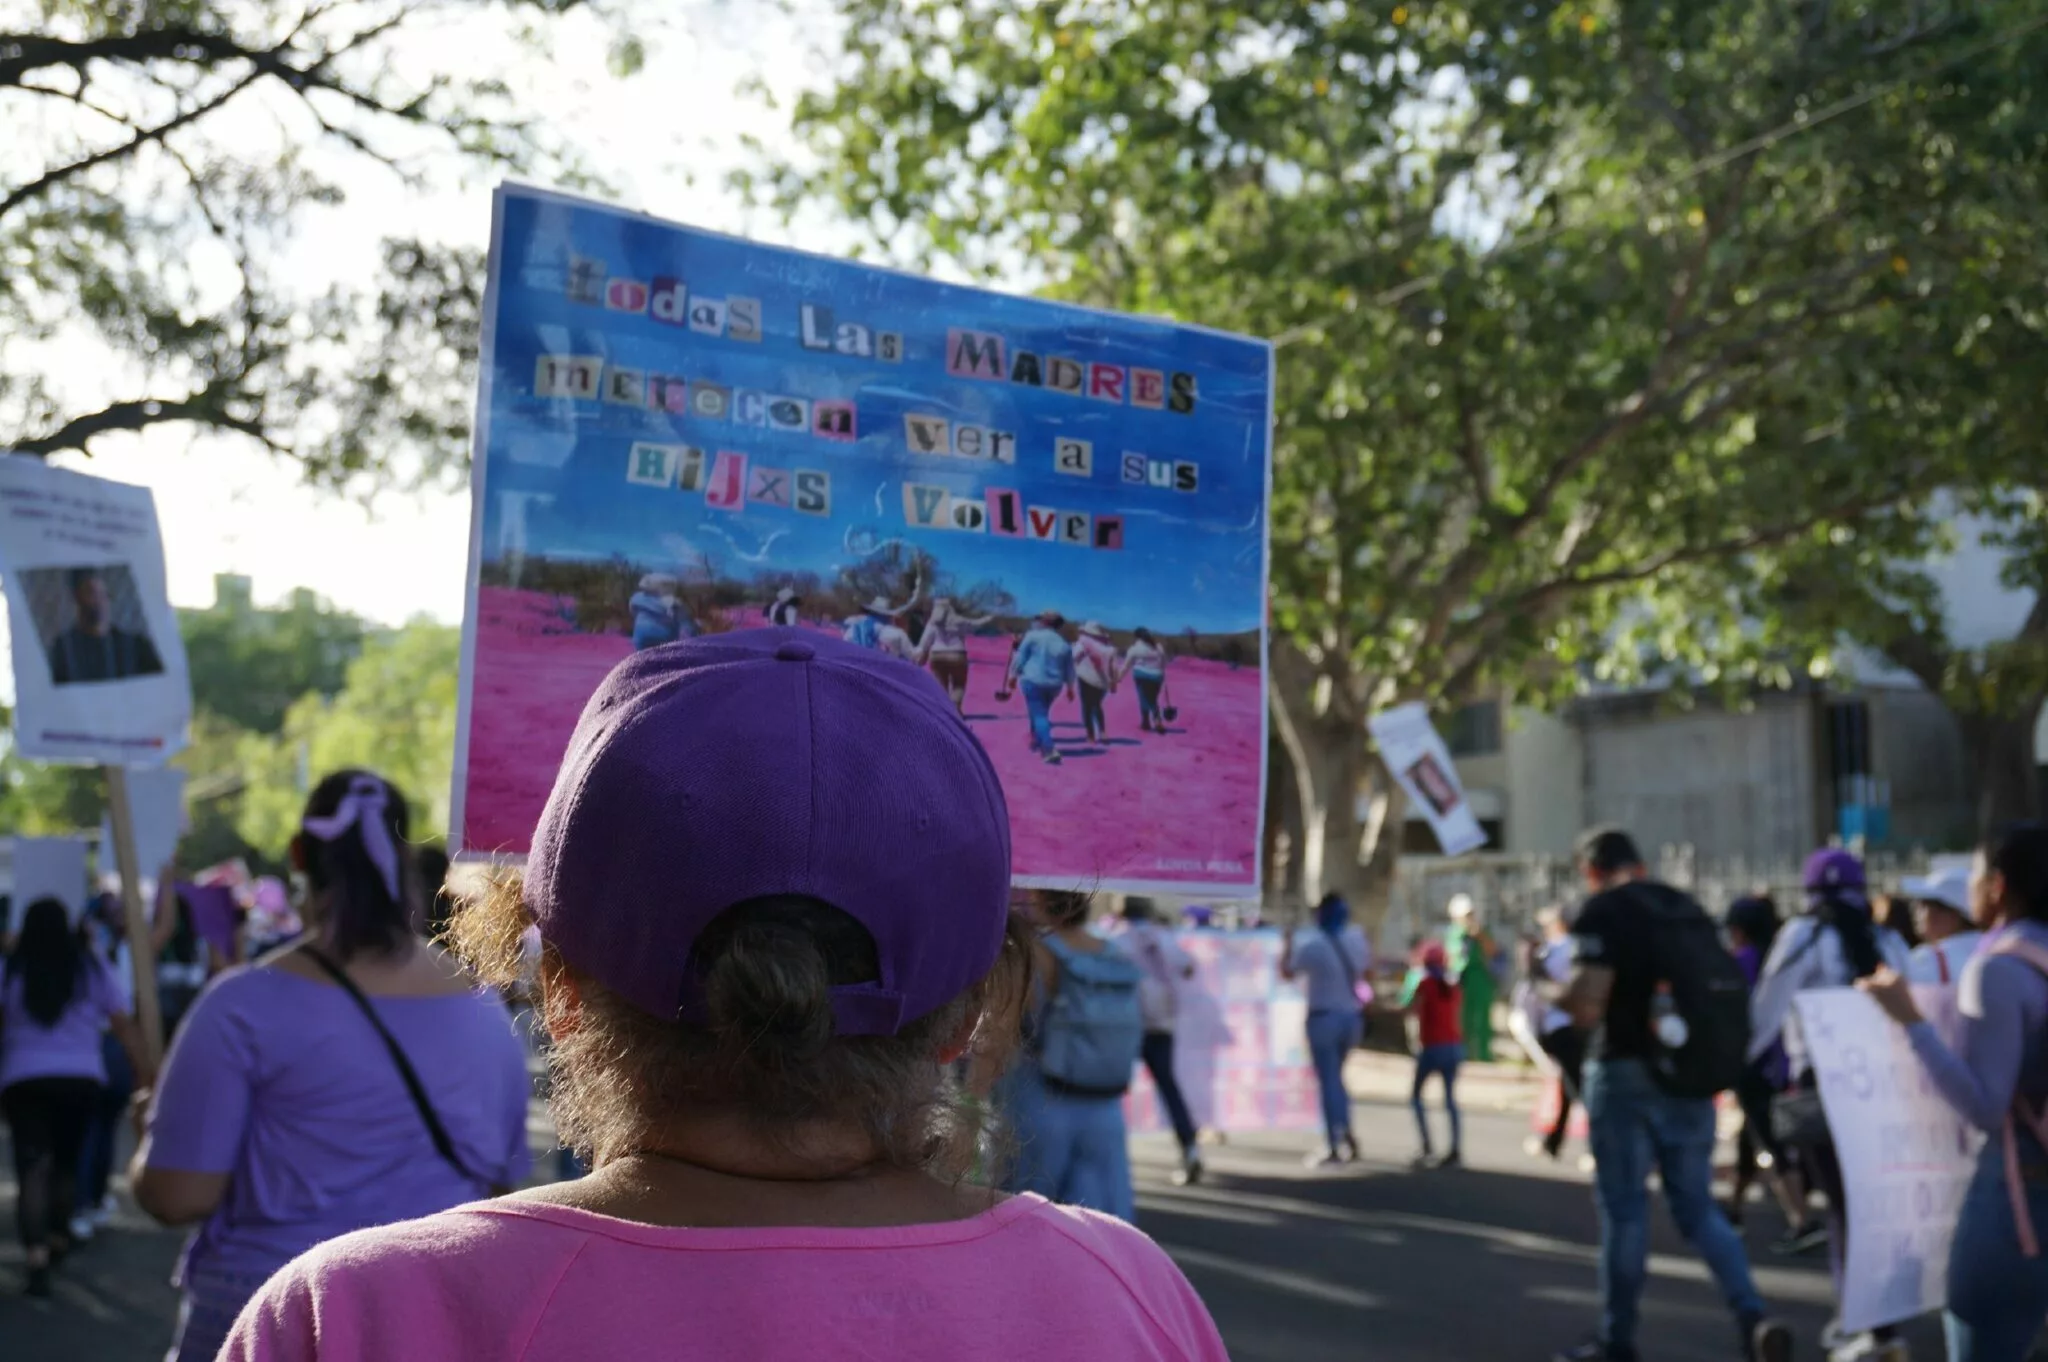 Frente a las violencias “juntxs florecemos desde las resistencias”: #8M en Guadalajara